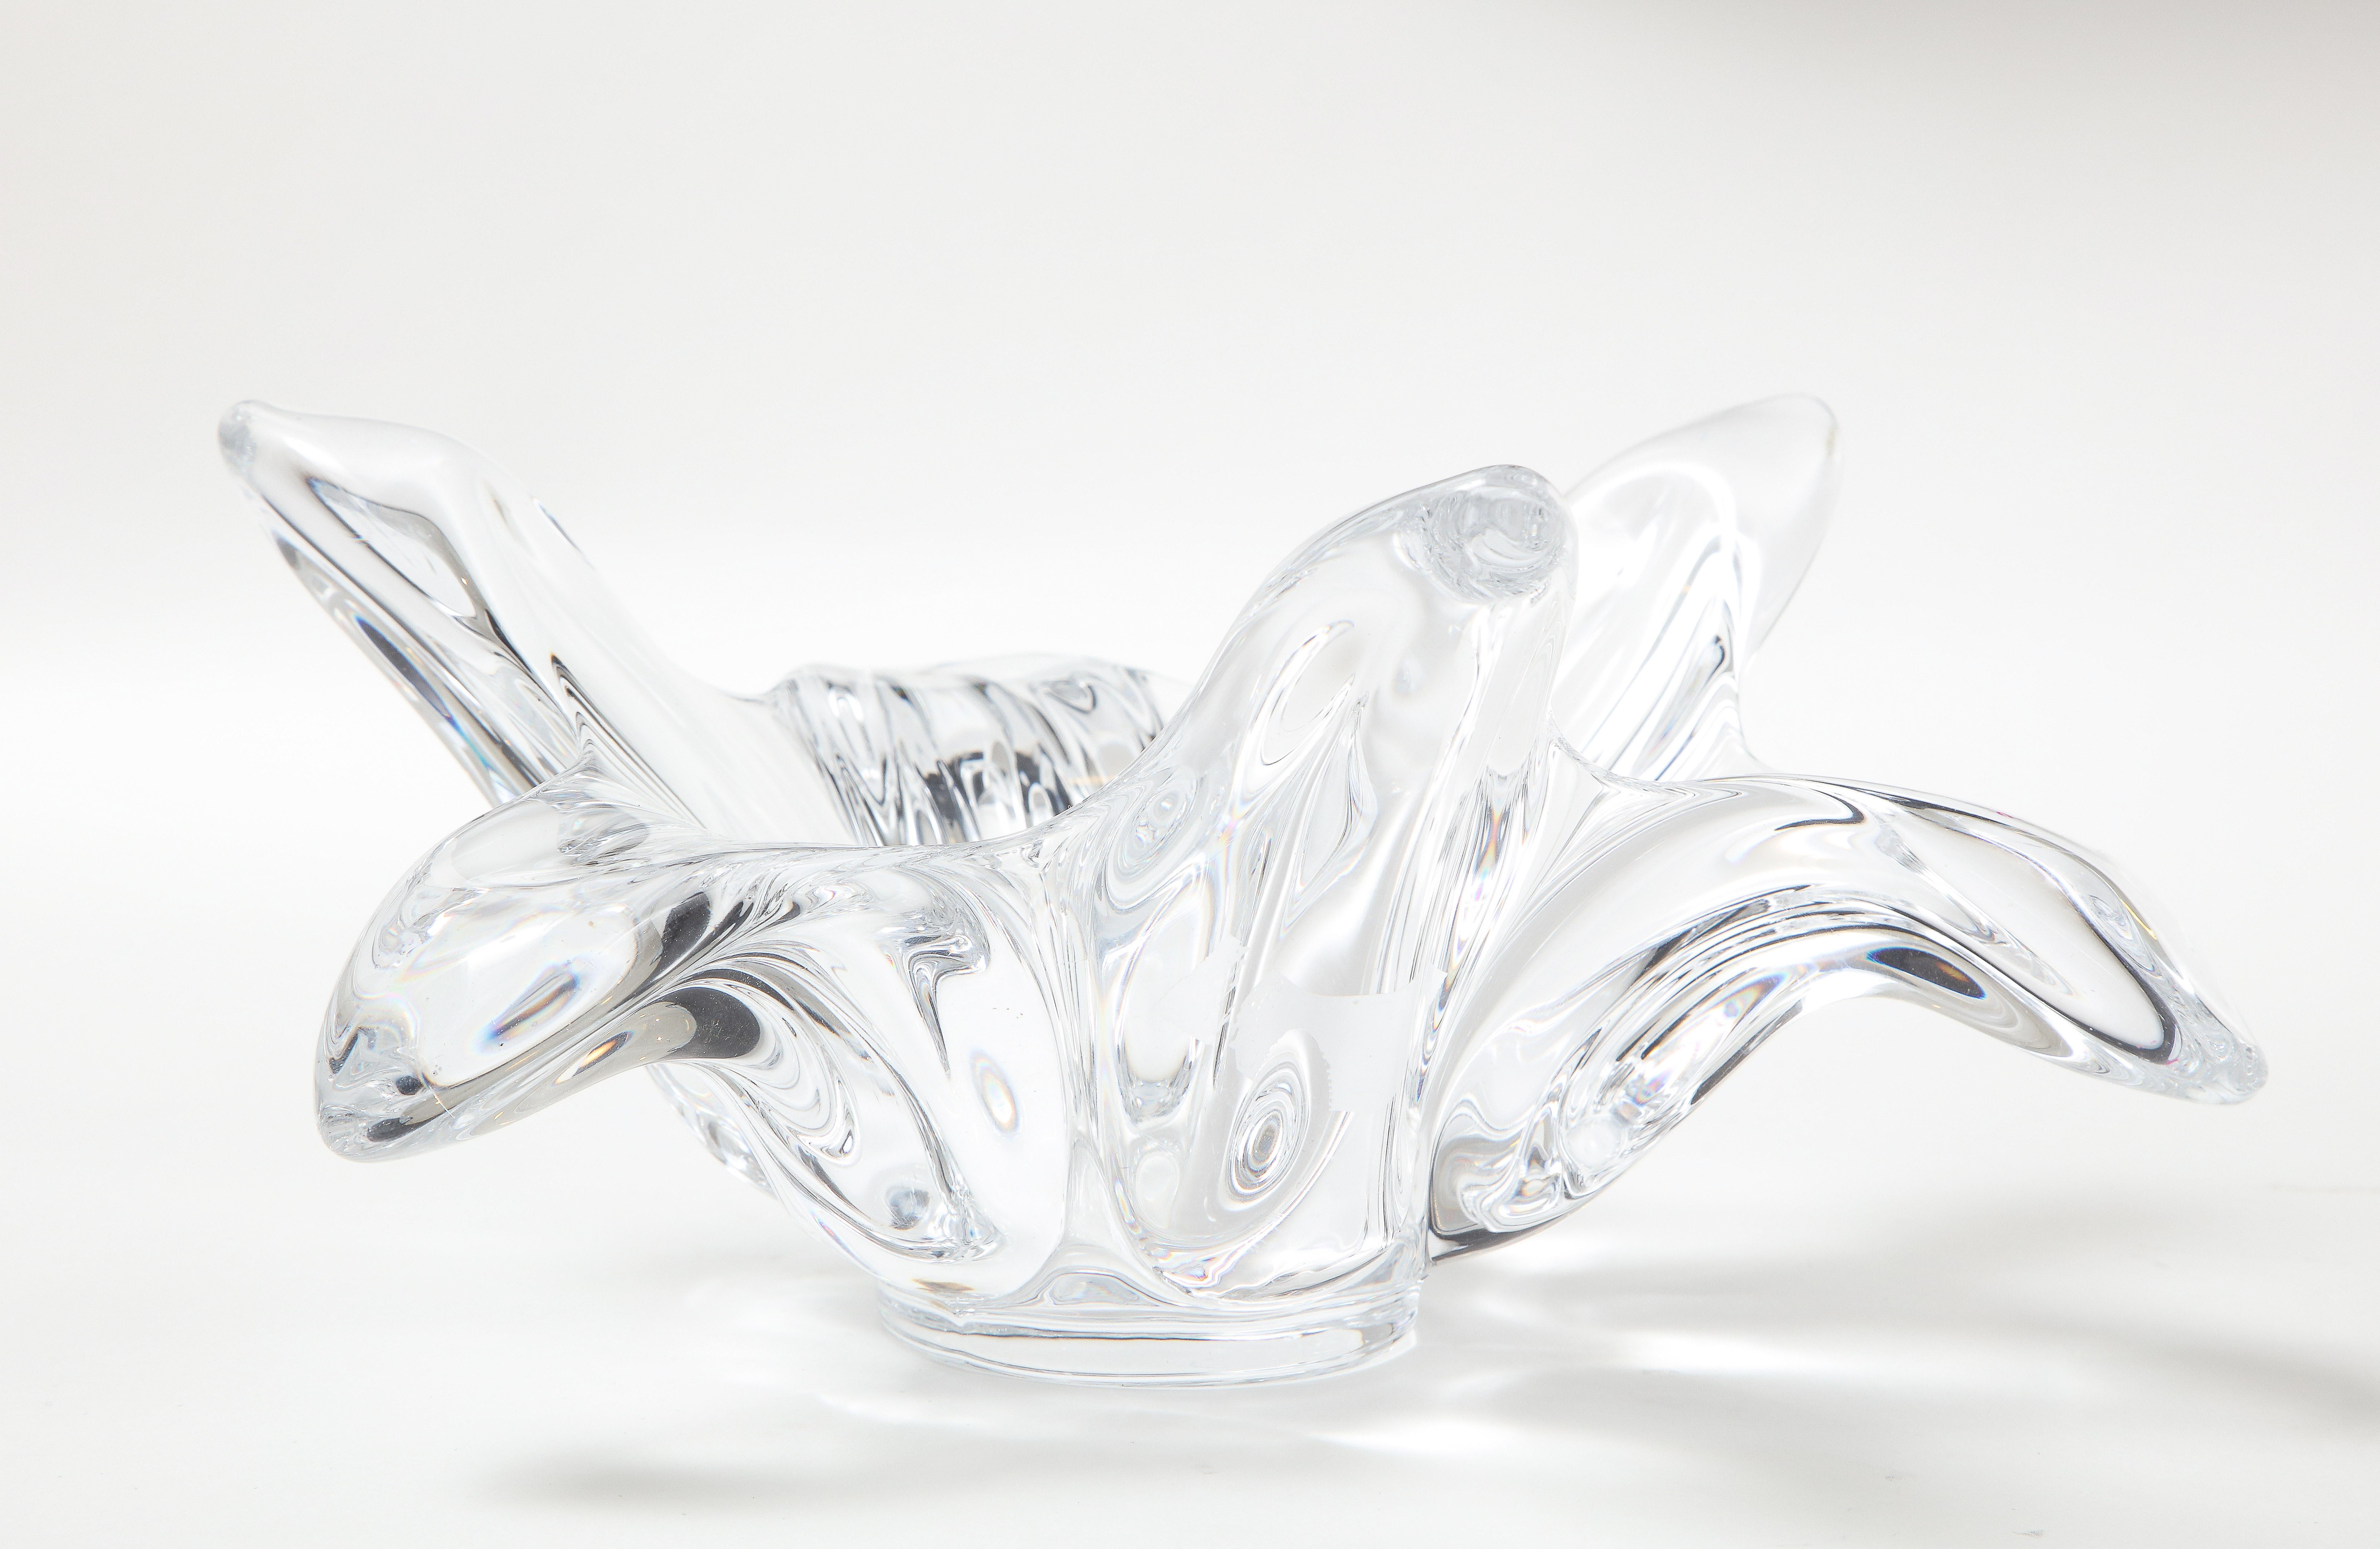 Spectaculaire coupe en cristal lourd, ressemblant à une éclaboussure d'eau ou à une fleur épanouie. Signé Vannes, France.